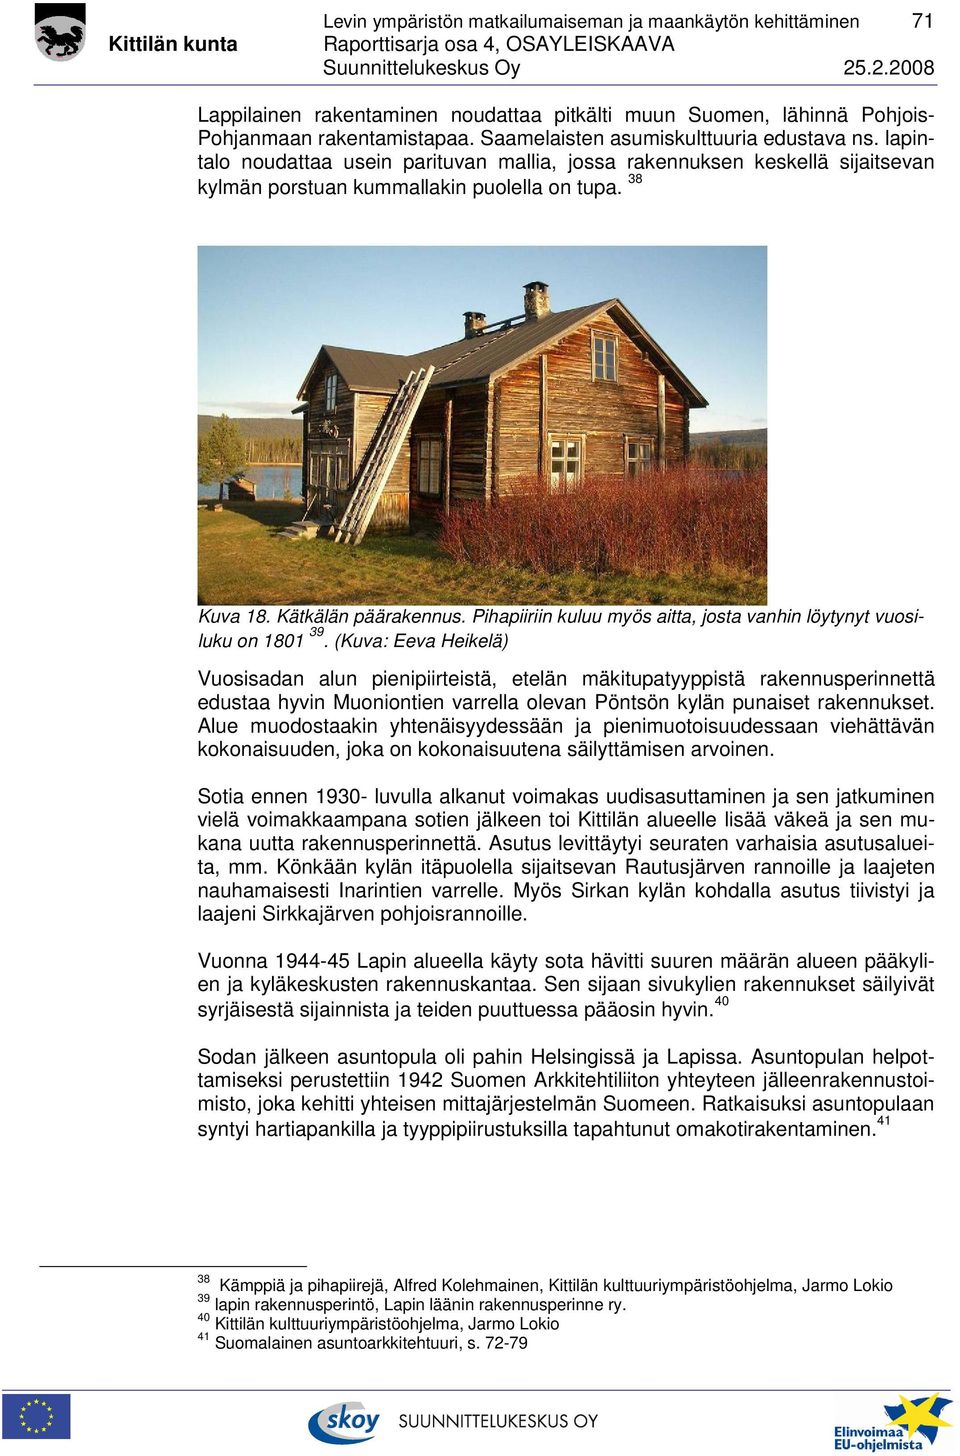 Kätkälän päärakennus. Pihapiiriin kuluu myös aitta, josta vanhin löytynyt vuosiluku on 1801 39.